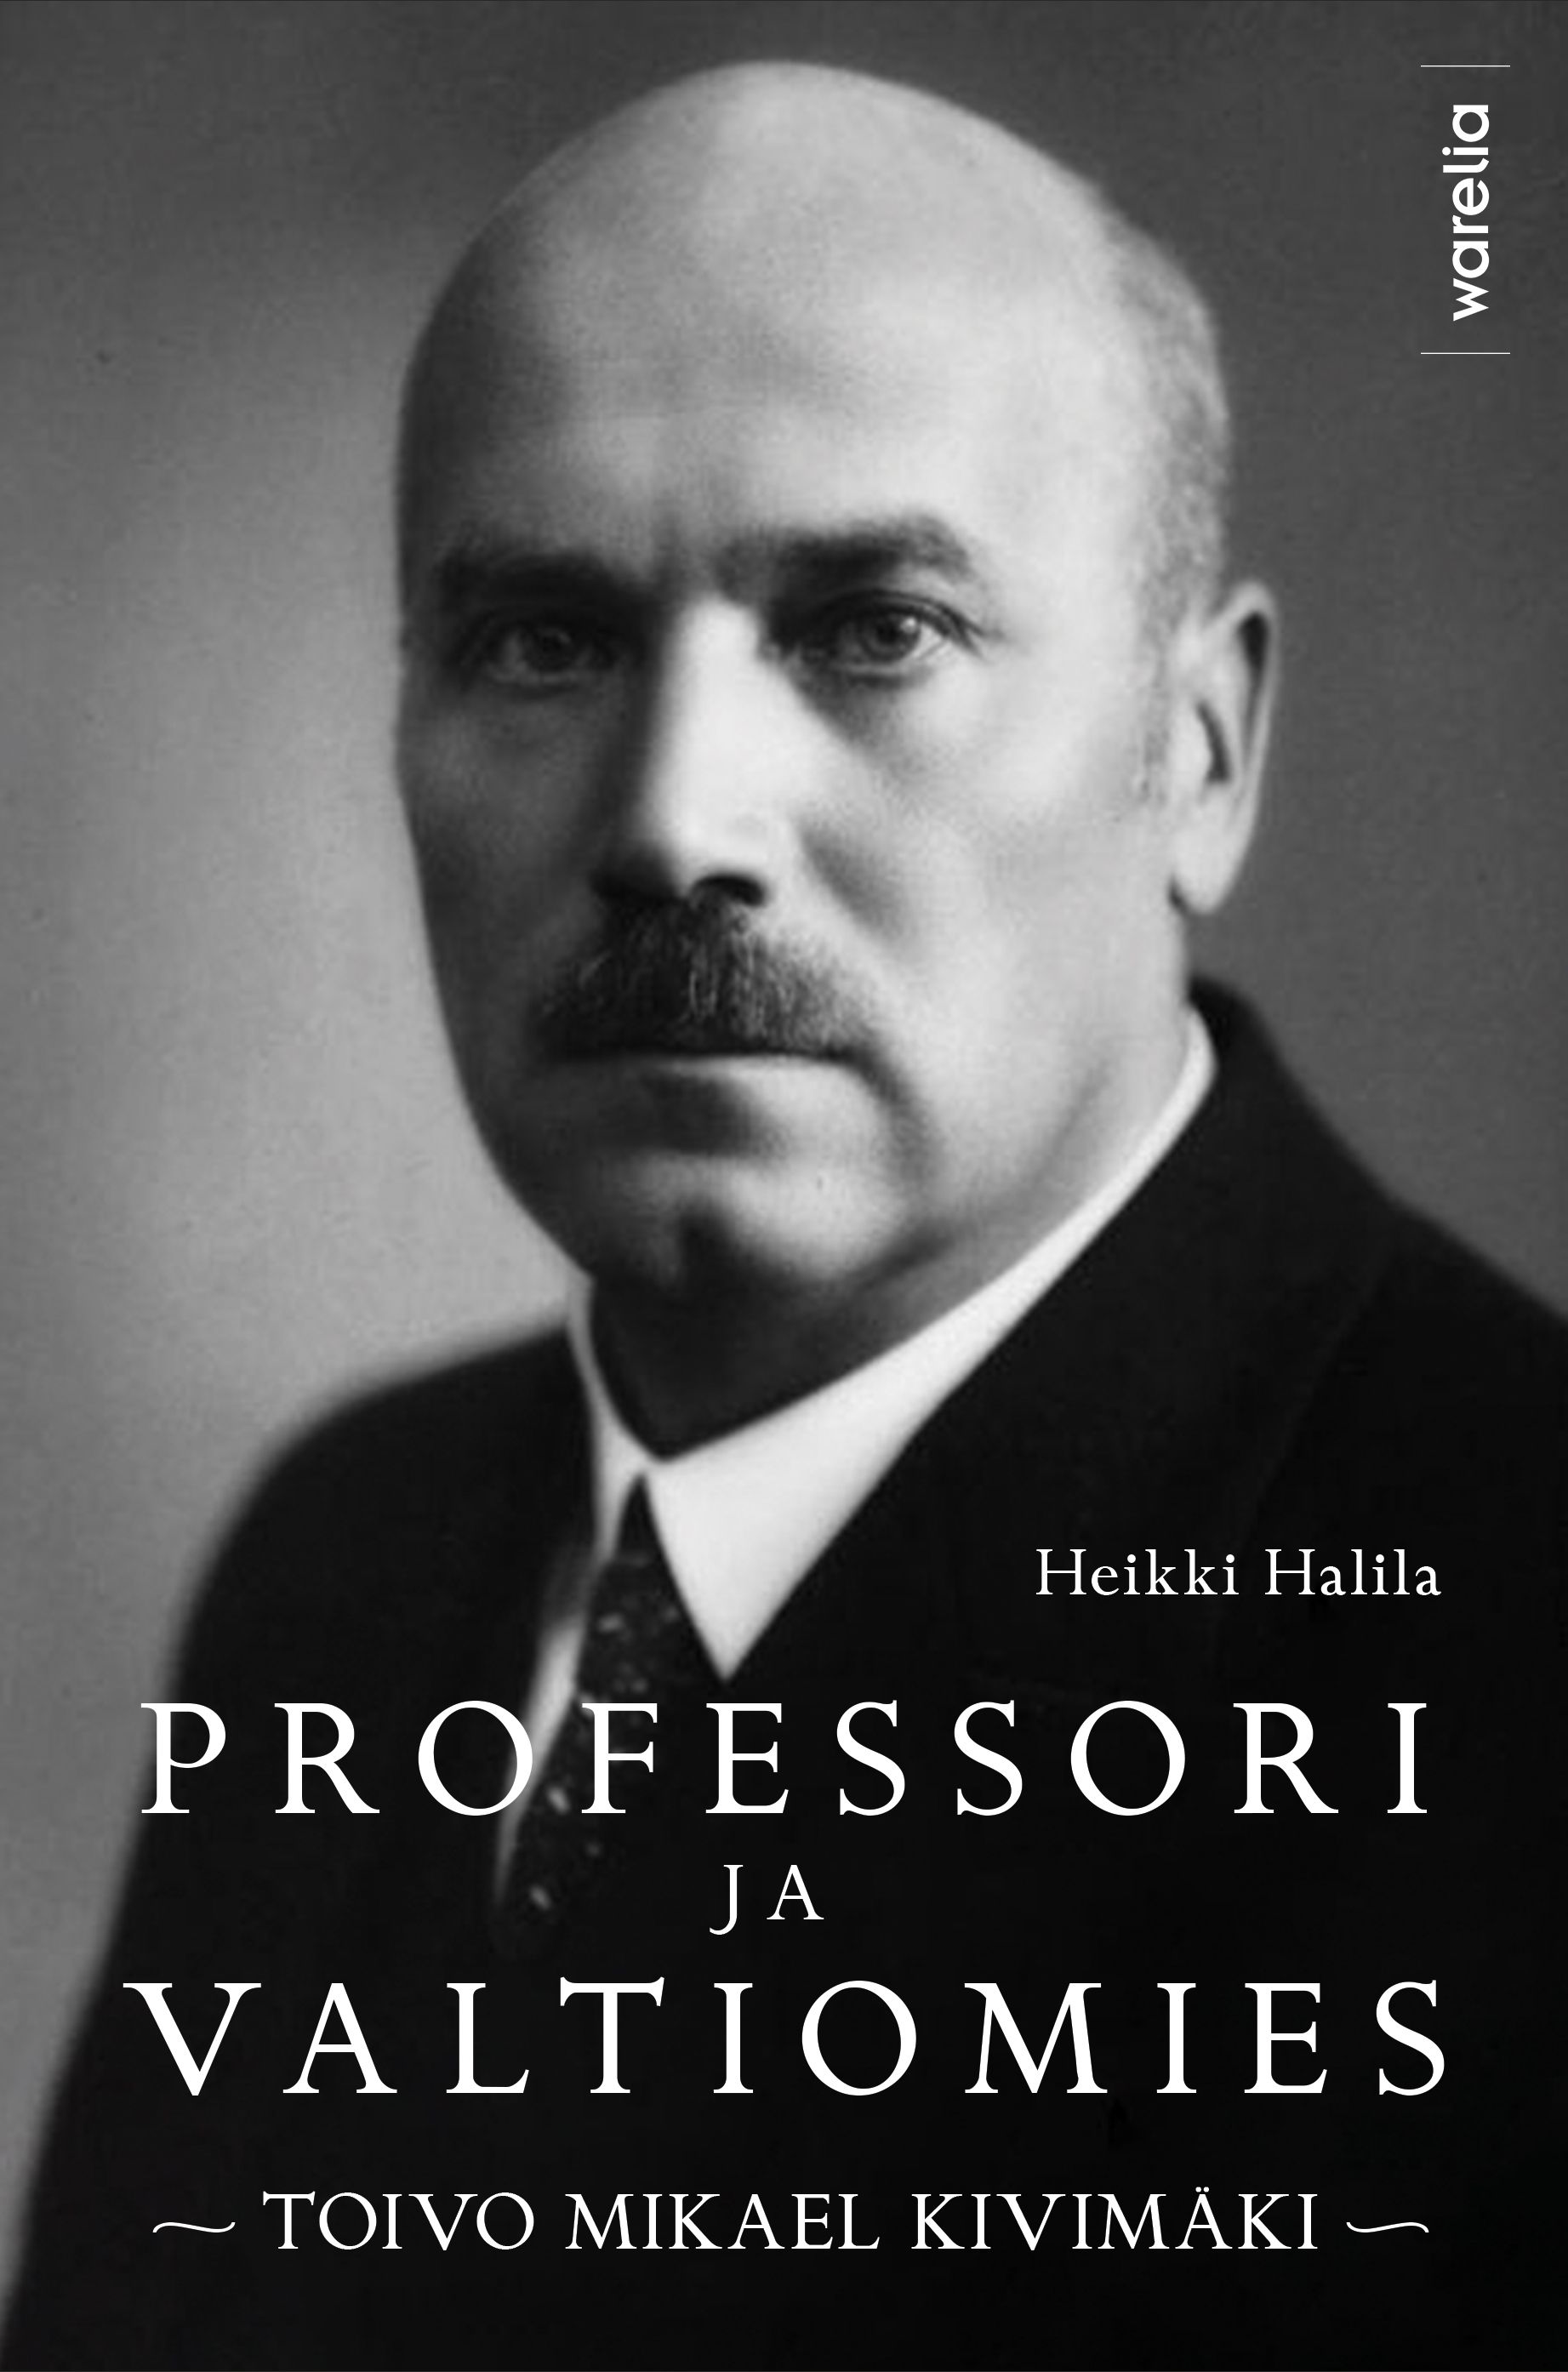 Heikki Halila : Professori ja valtiomies Toivo Mikael Kivimäki